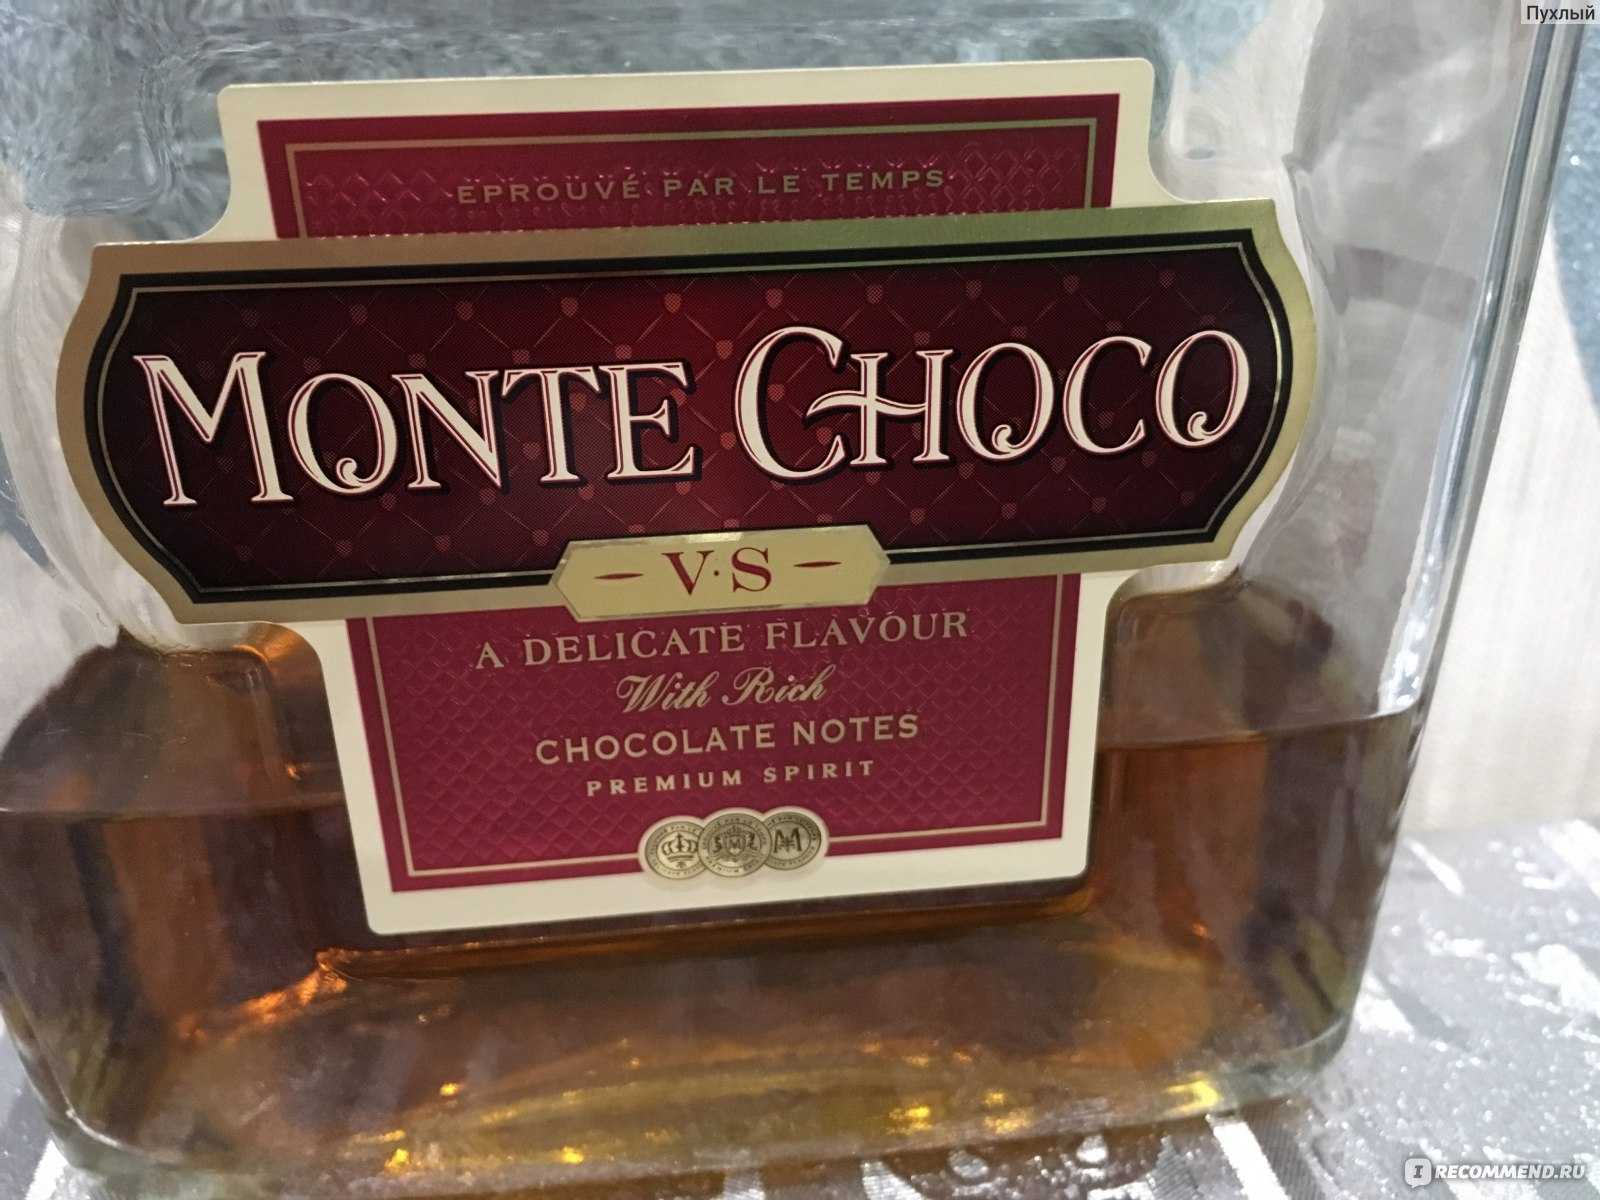 Monte choco irish. Шоколадный коньяк Монте шоко. Монте Чоко коньяк шоколадный. Монте Чоко коньяк шоколадная гора. Напиток коньяк Monte Choco.